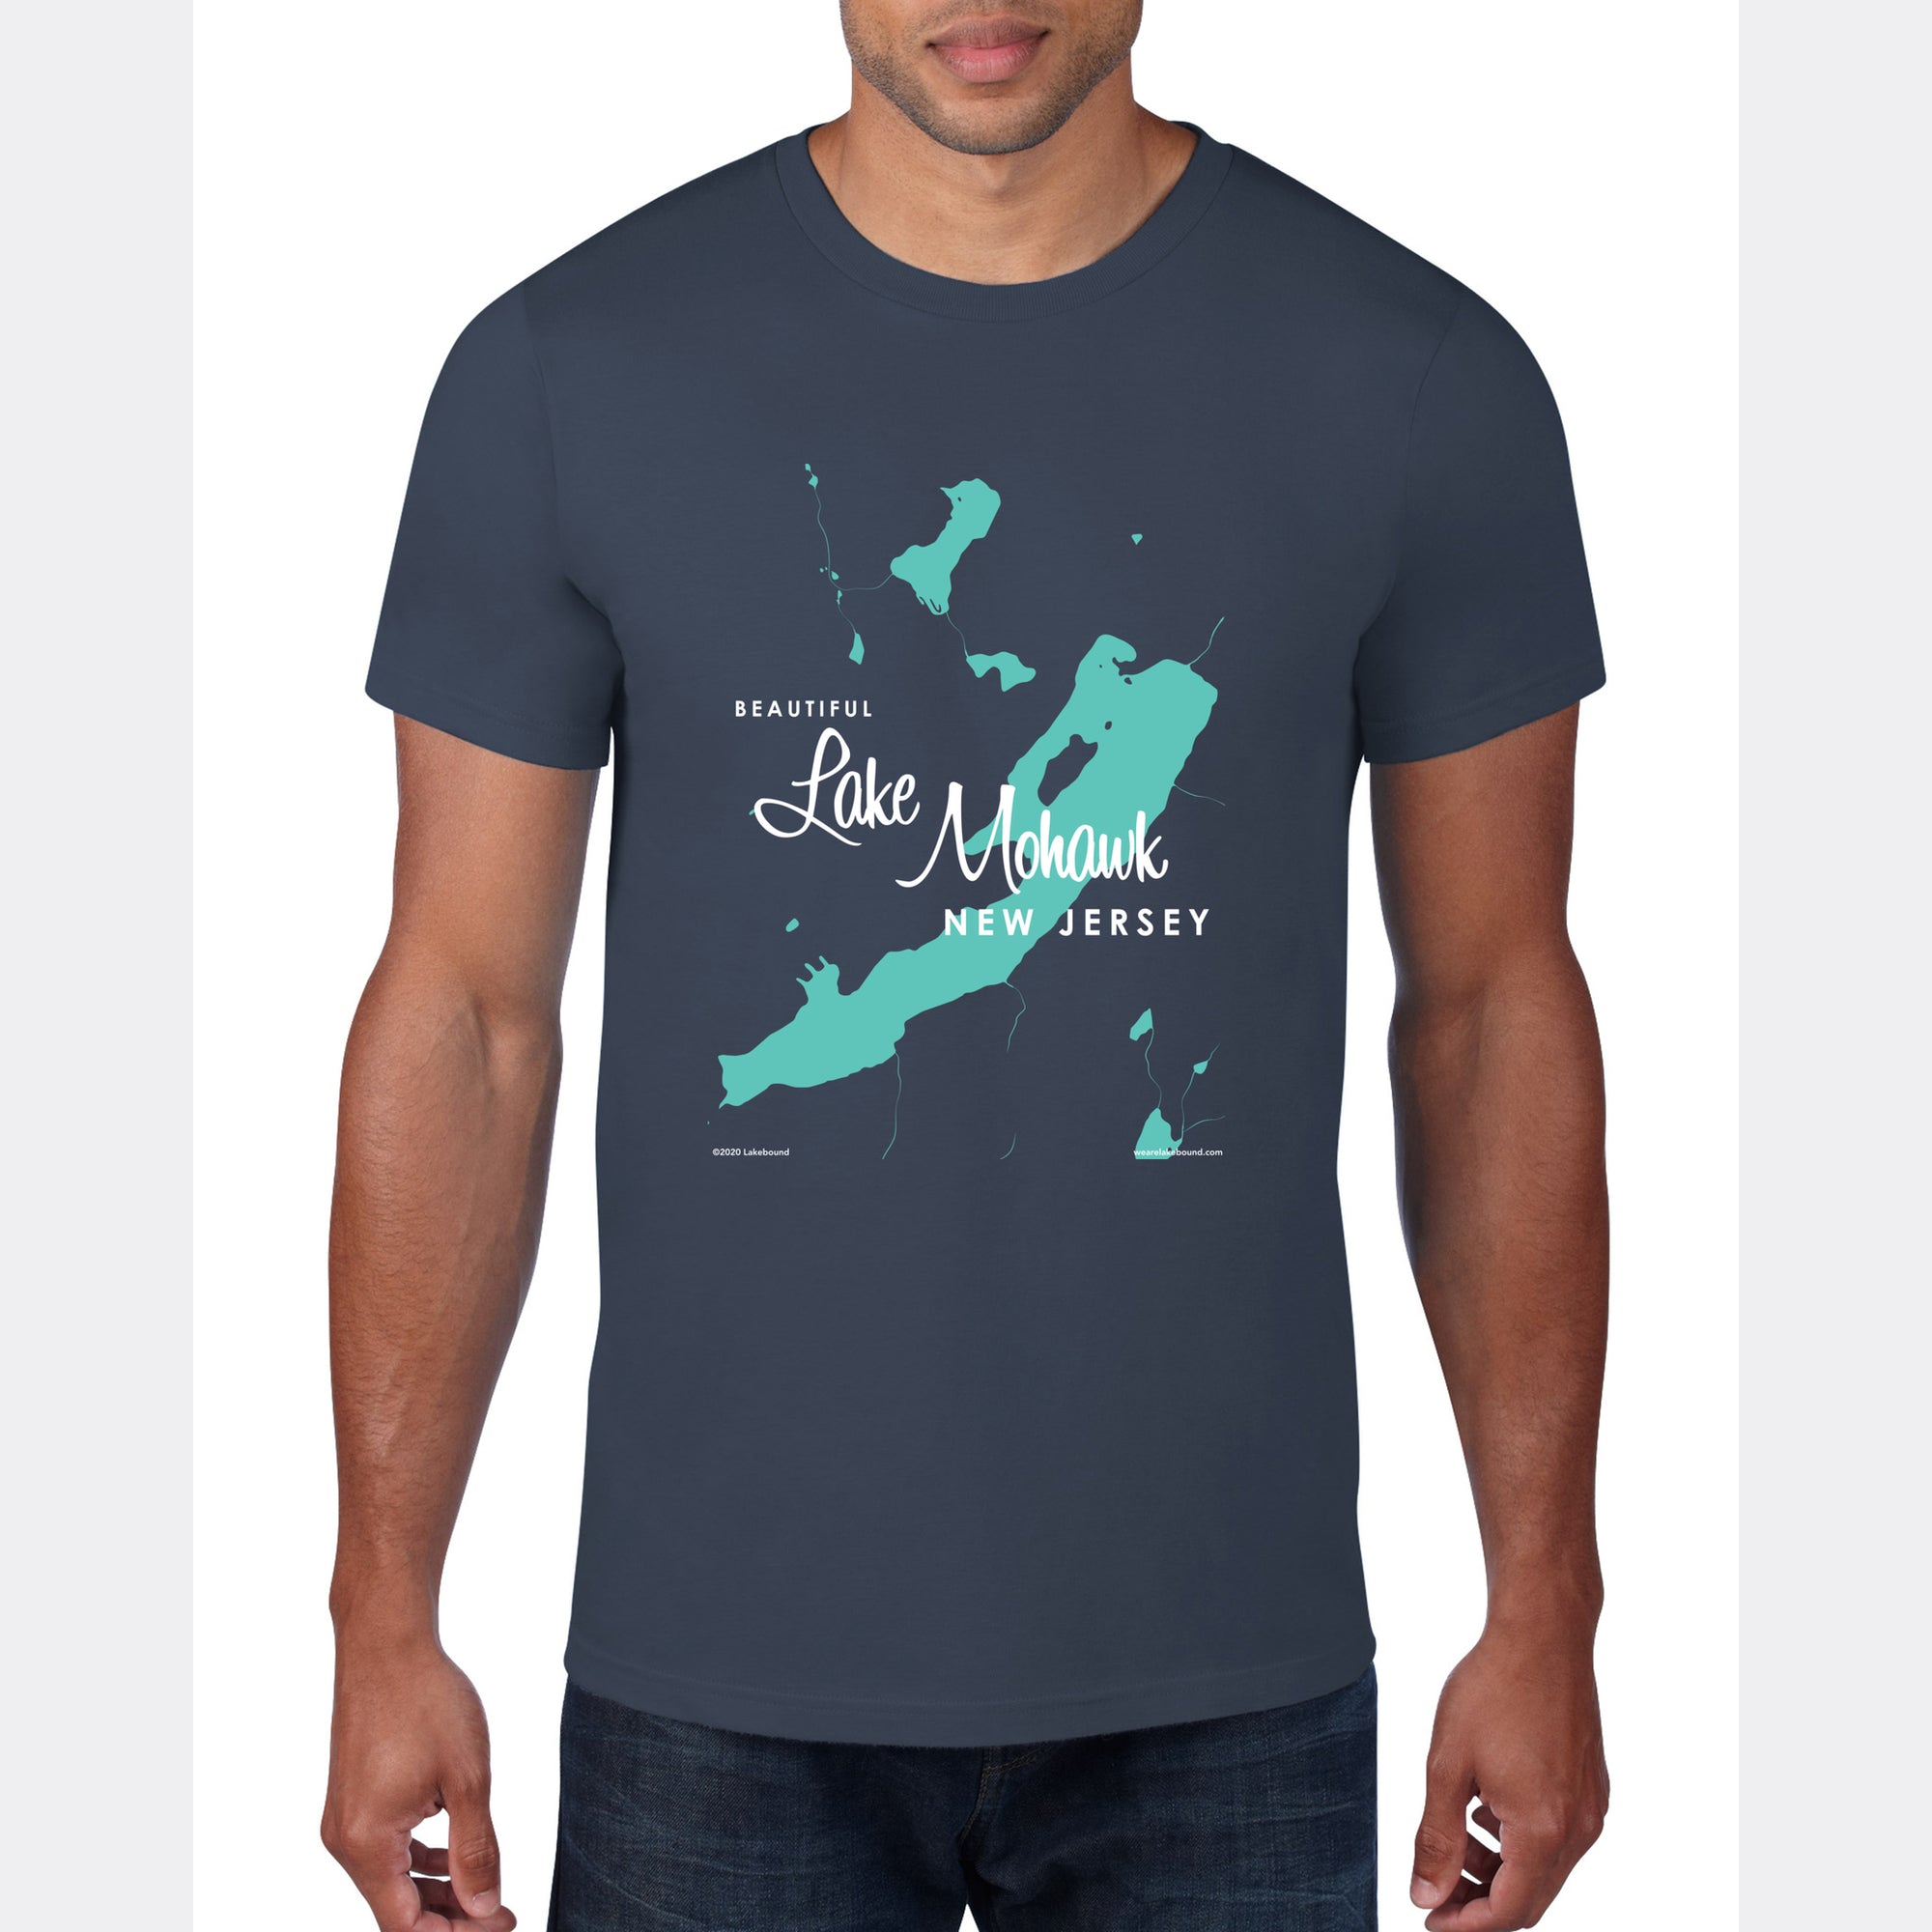 Lake Mohawk New Jersey, T-Shirt